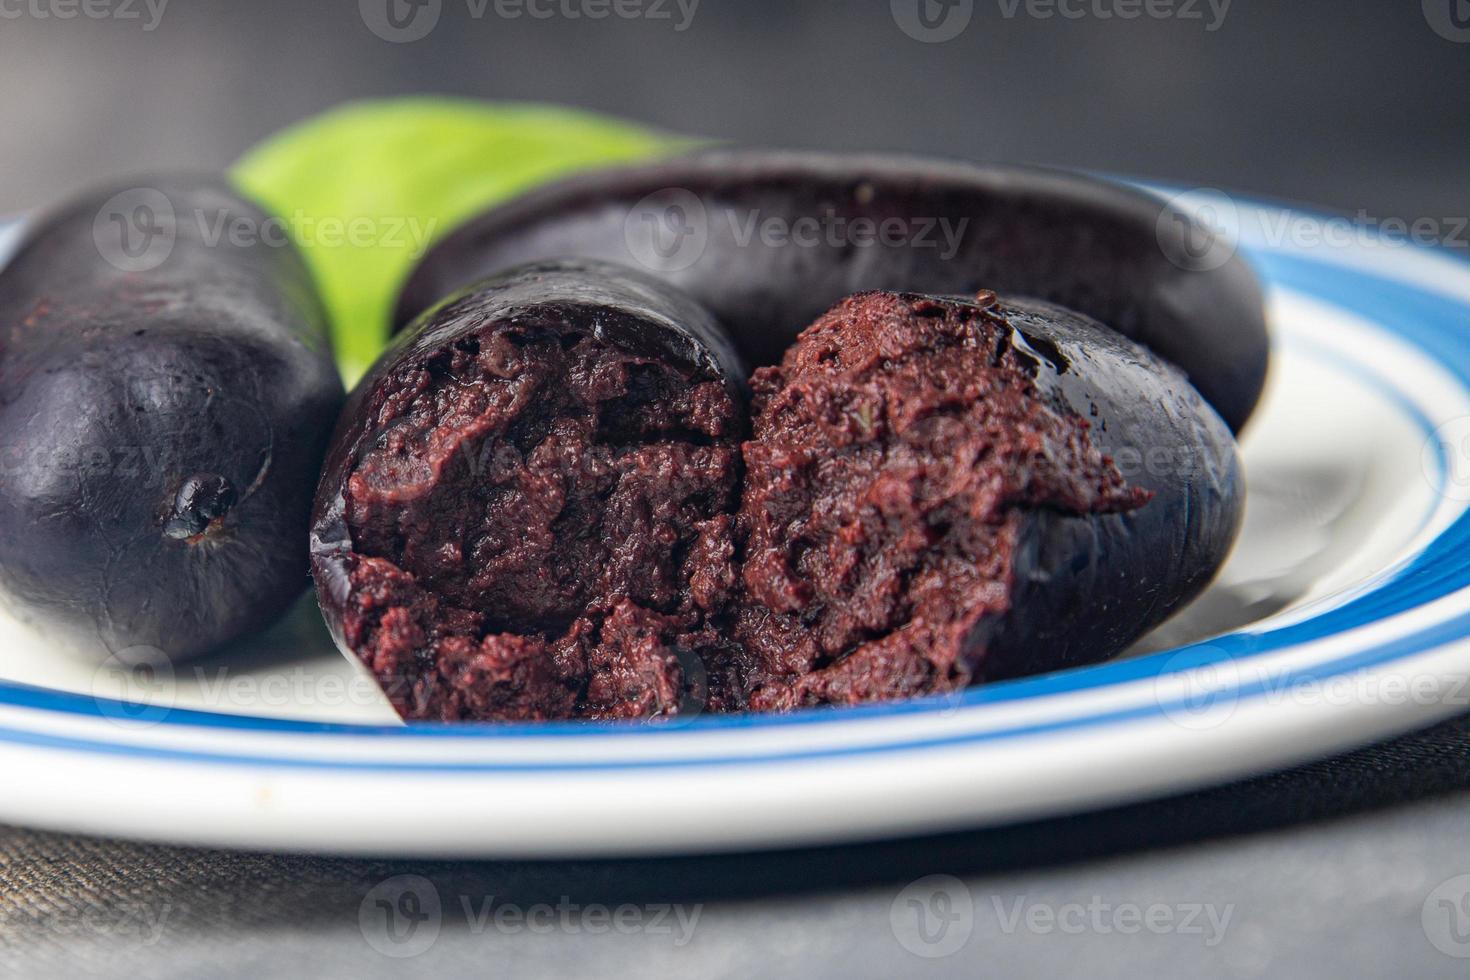 boudin noir saucisse repas sain sanglant nourriture collation régime alimentaire sur la table copie espace arrière-plan alimentaire photo